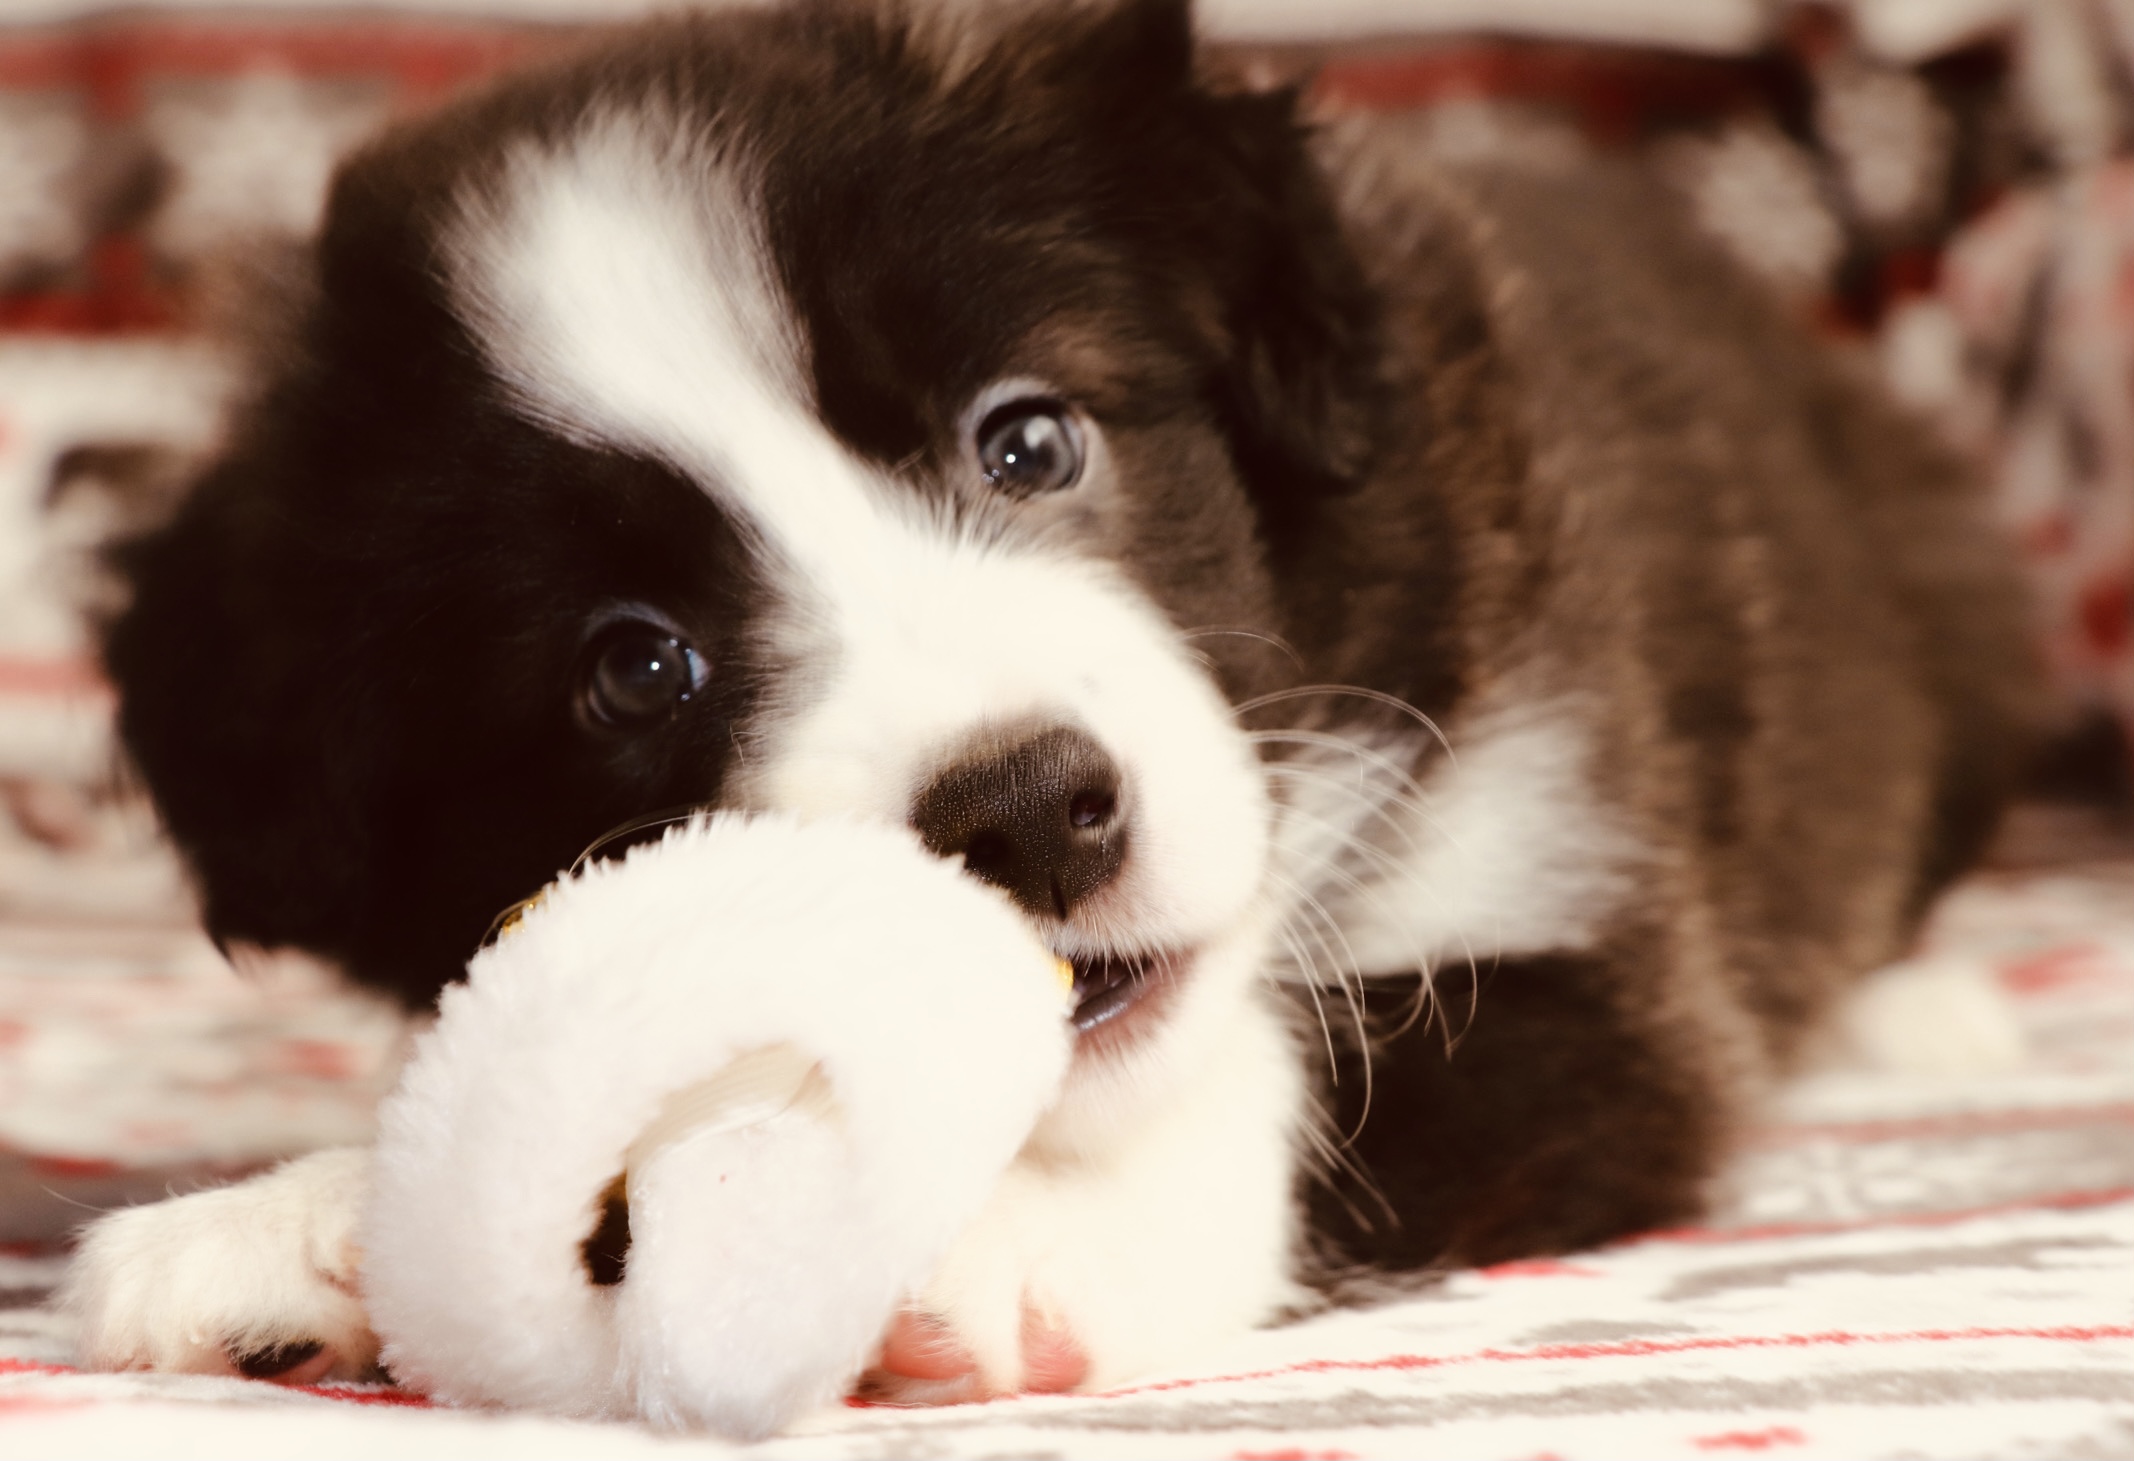 en la imagen se muestra un cachorro border collie con color blanco y negro muy claro, se muestra de frente mirando a la camara